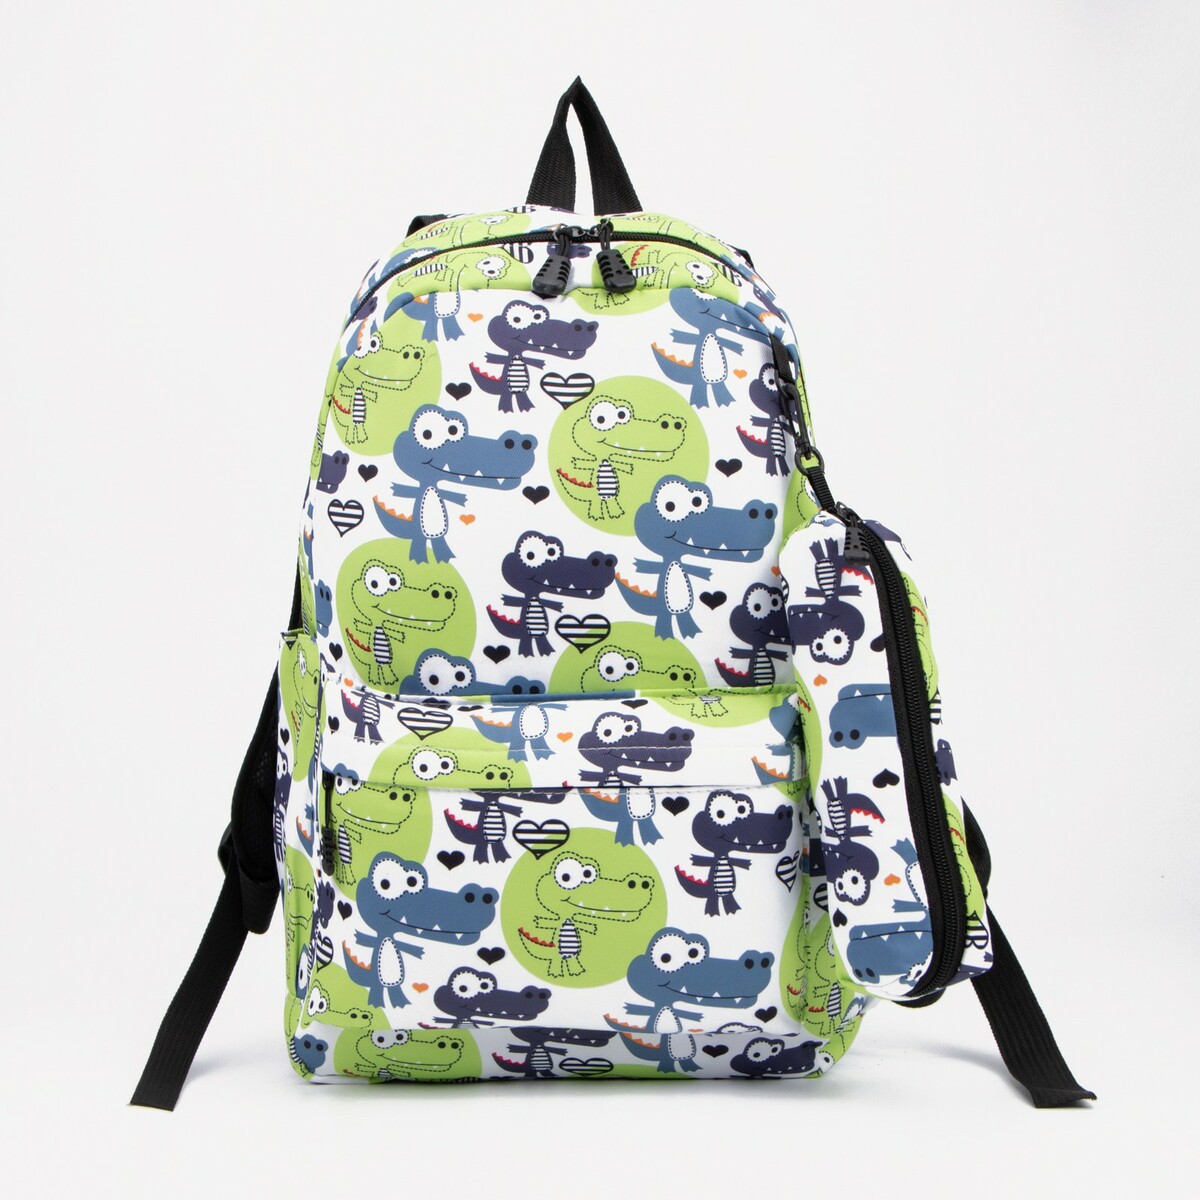 Рюкзак школьный из текстиля на молнии, наружный карман, пенал, цвет зеленый рюкзак на колесах jasminestar зеленый magic с наполнением сумка пенал 71377 1